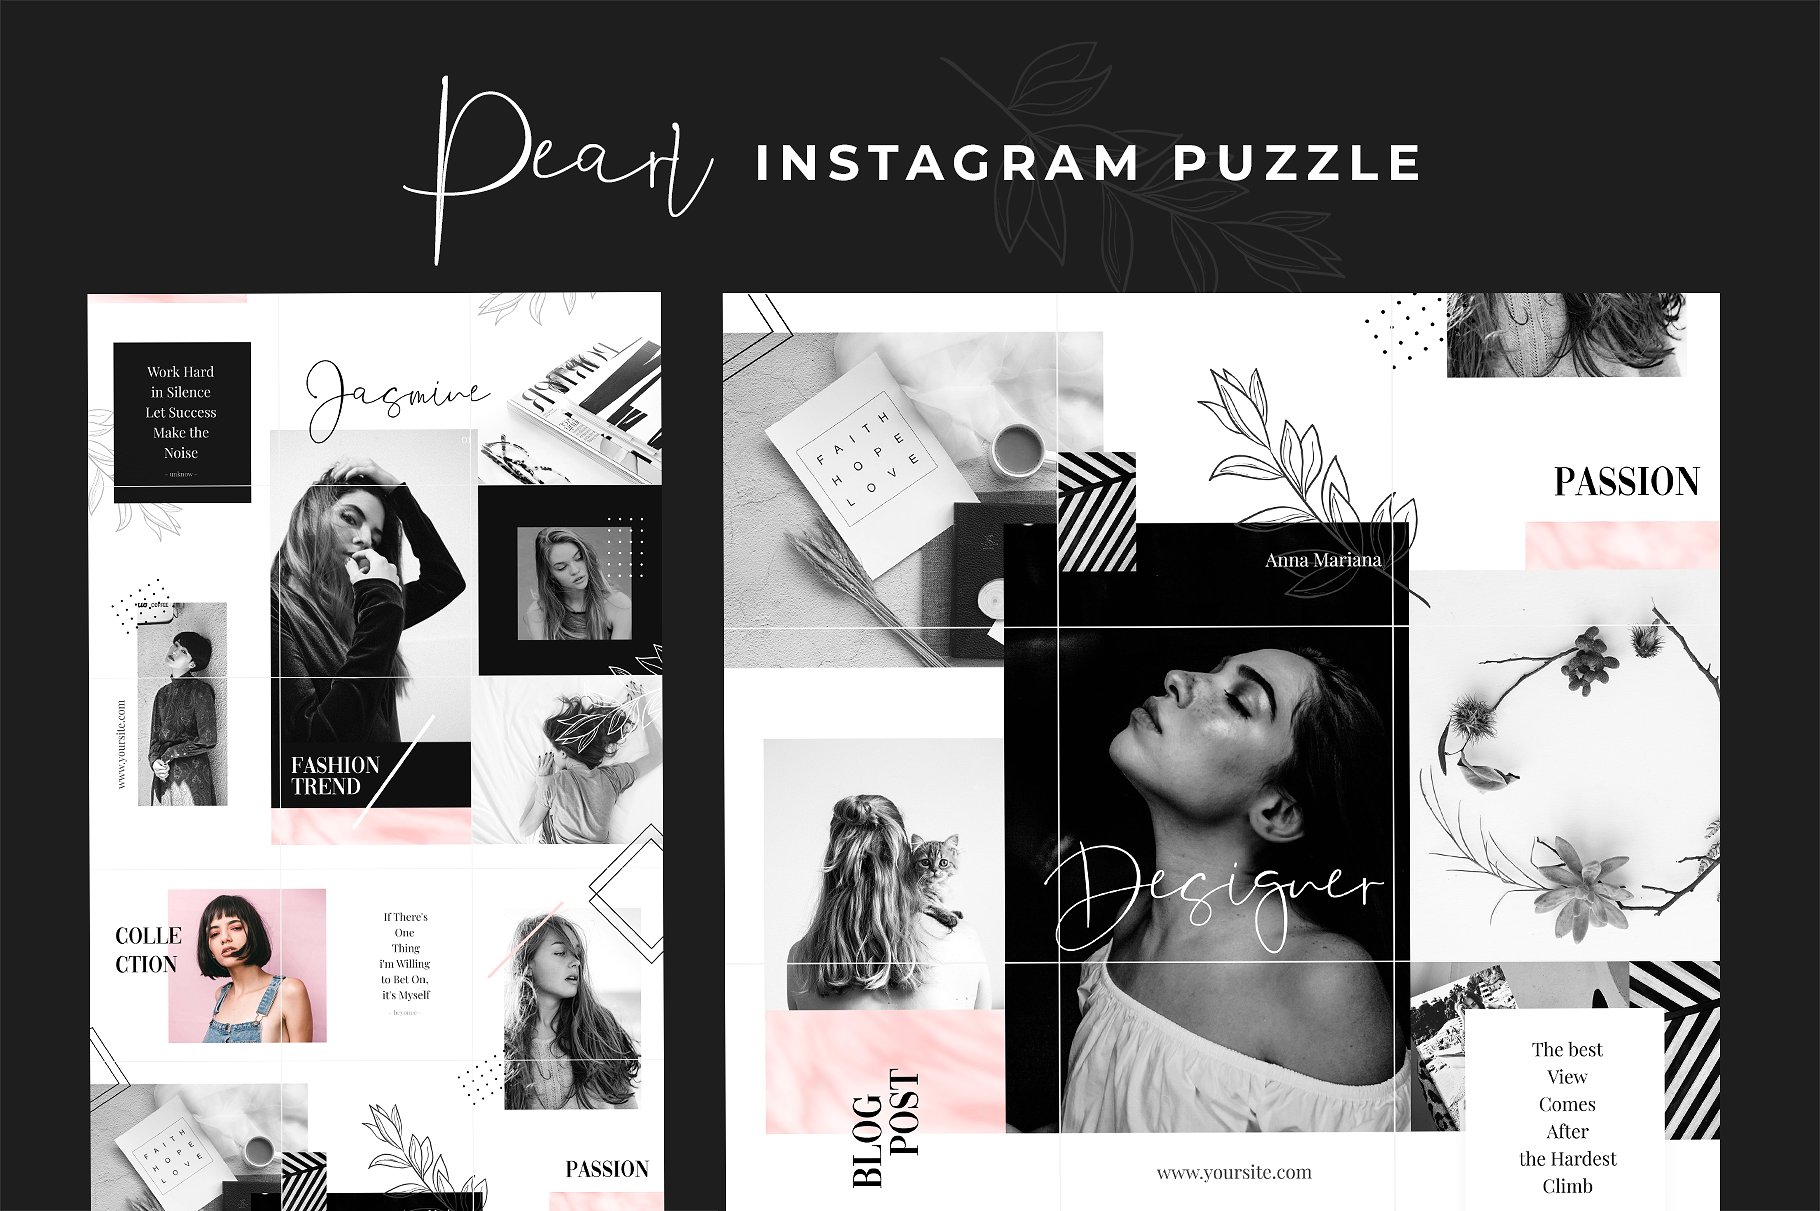 时尚高端的Instagram 社交媒体模板非凡图库精选合辑下载 Royal Instagram Bundle [psd]插图(9)